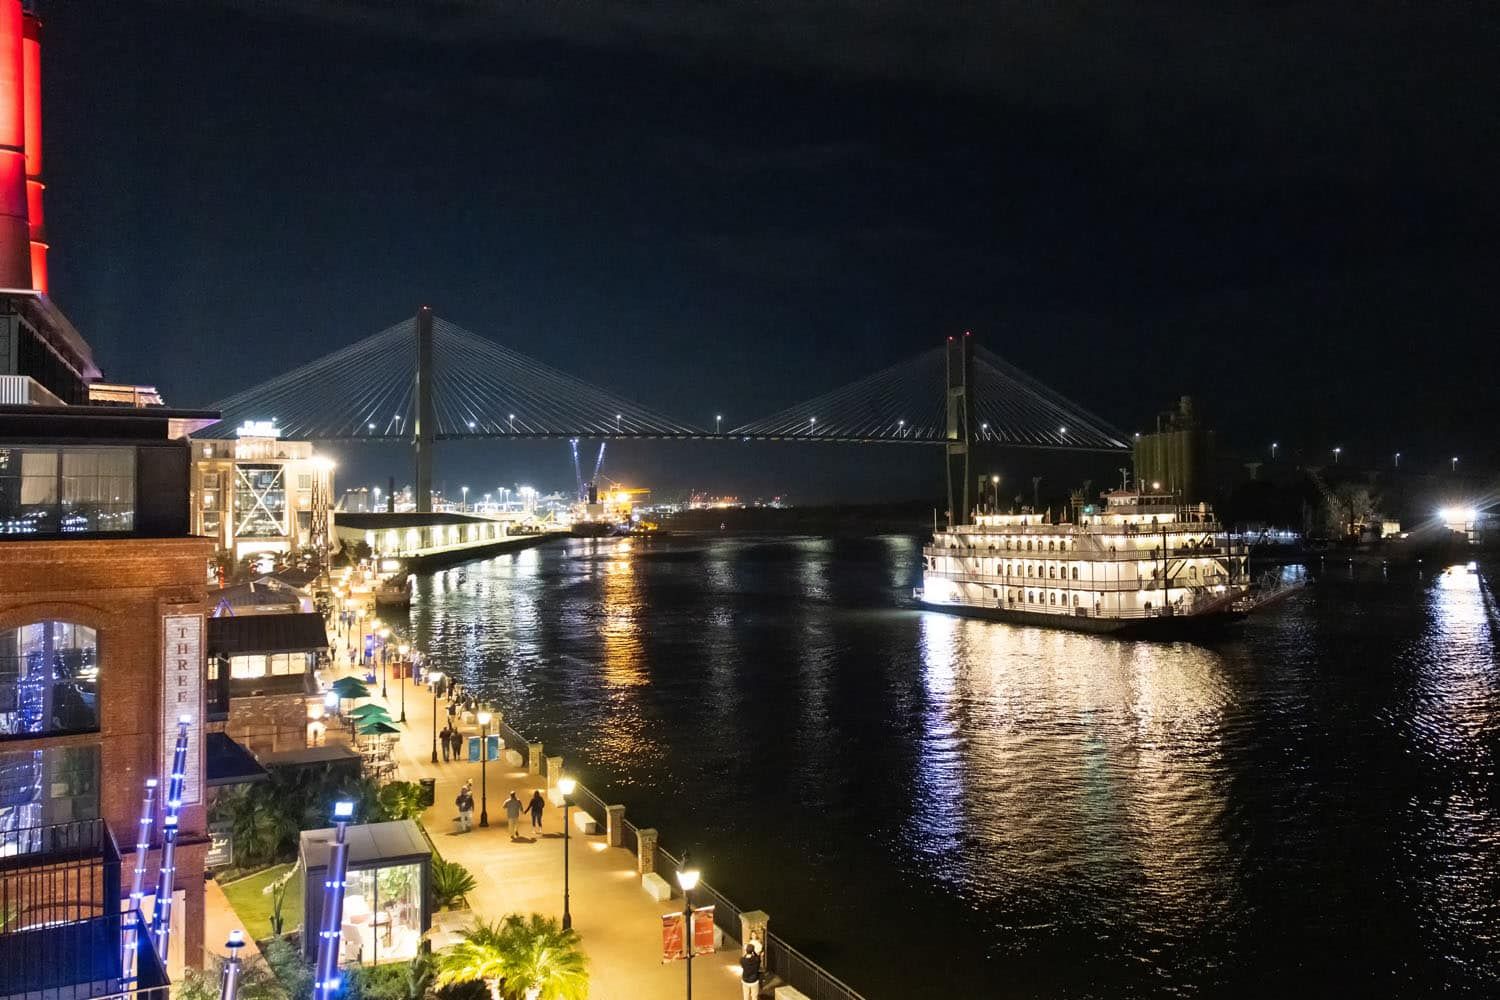 Savannah at Night | Best rooftop bars in Savannah